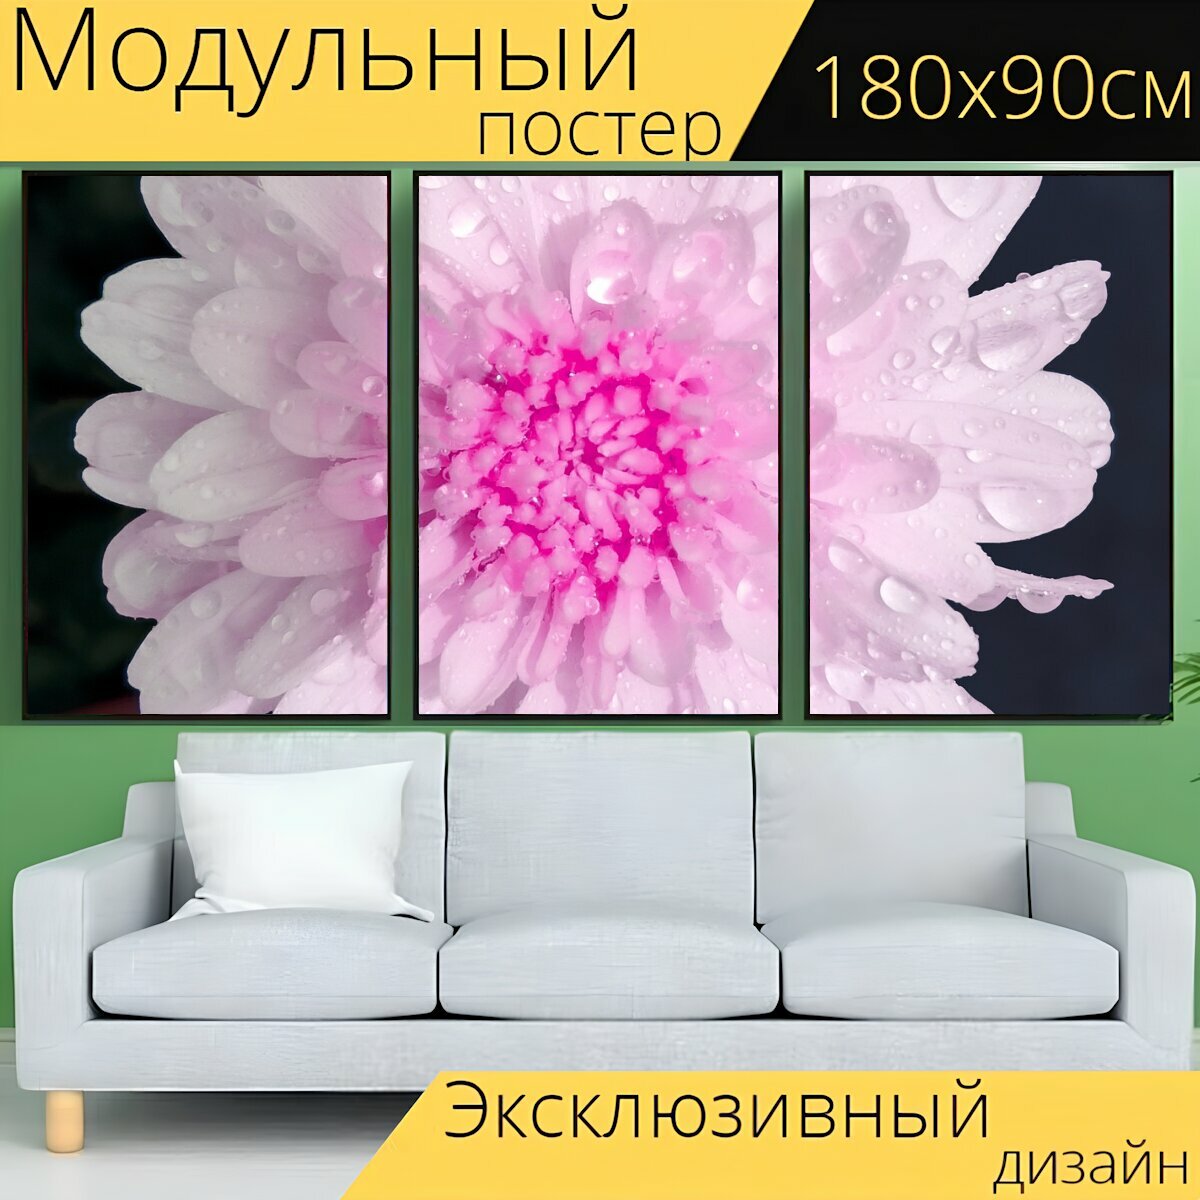 Модульный постер "Розовый белый, белый цветок, розовый цветок" 180 x 90 см. для интерьера